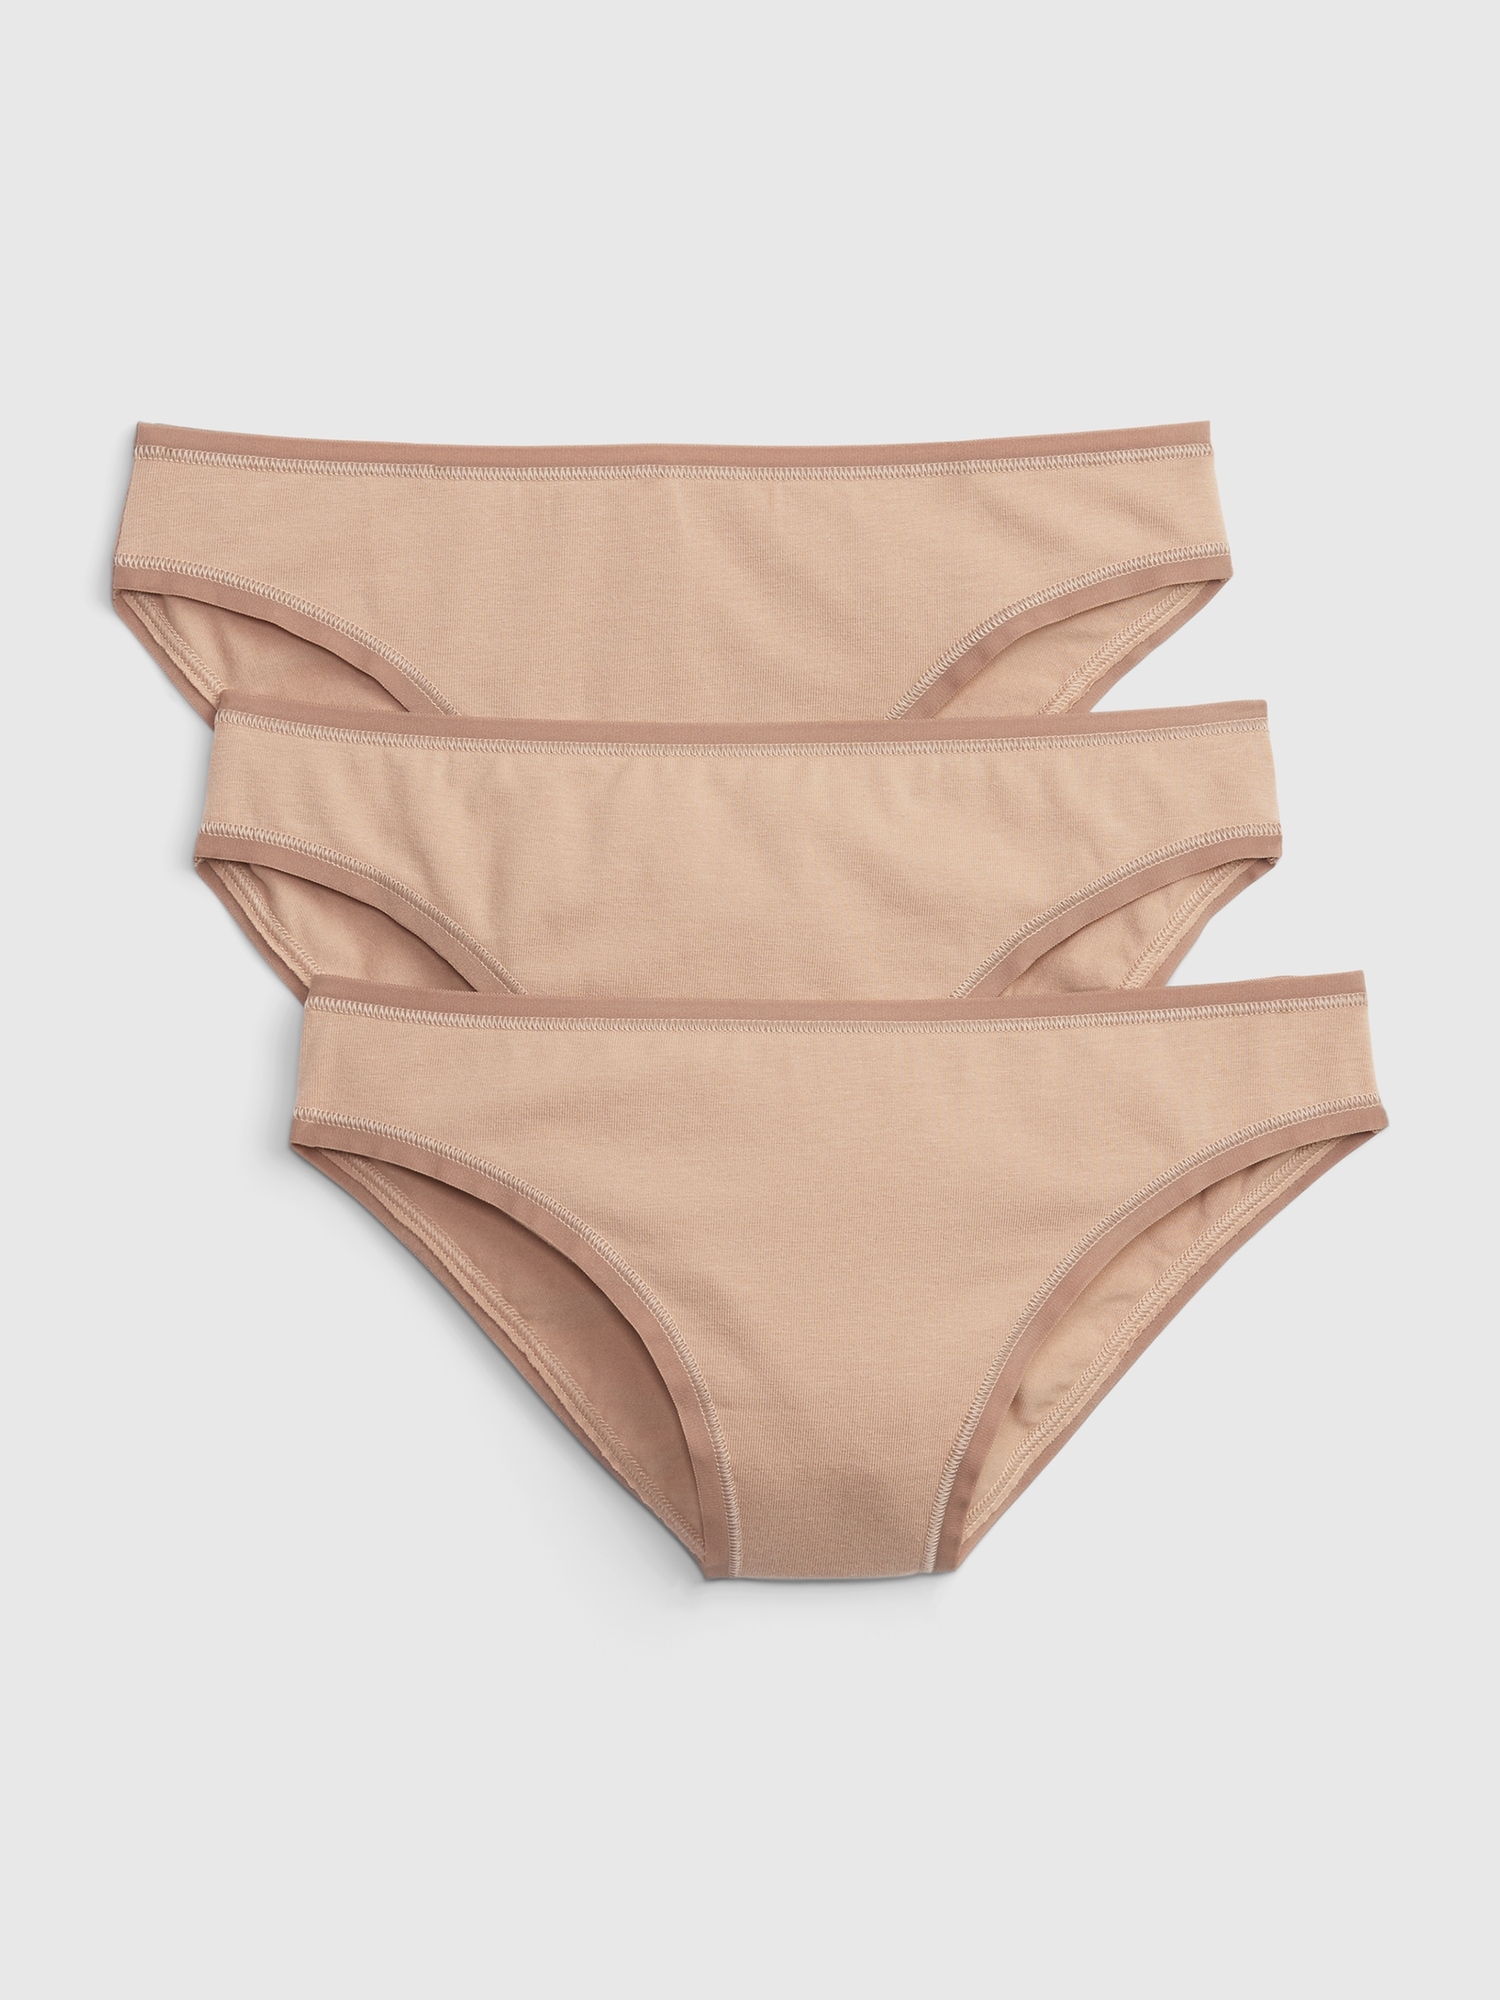 Sustainable Cotton Underwear Chestnut mid Nude Low Rise Bikini Style Organic  Cotton 